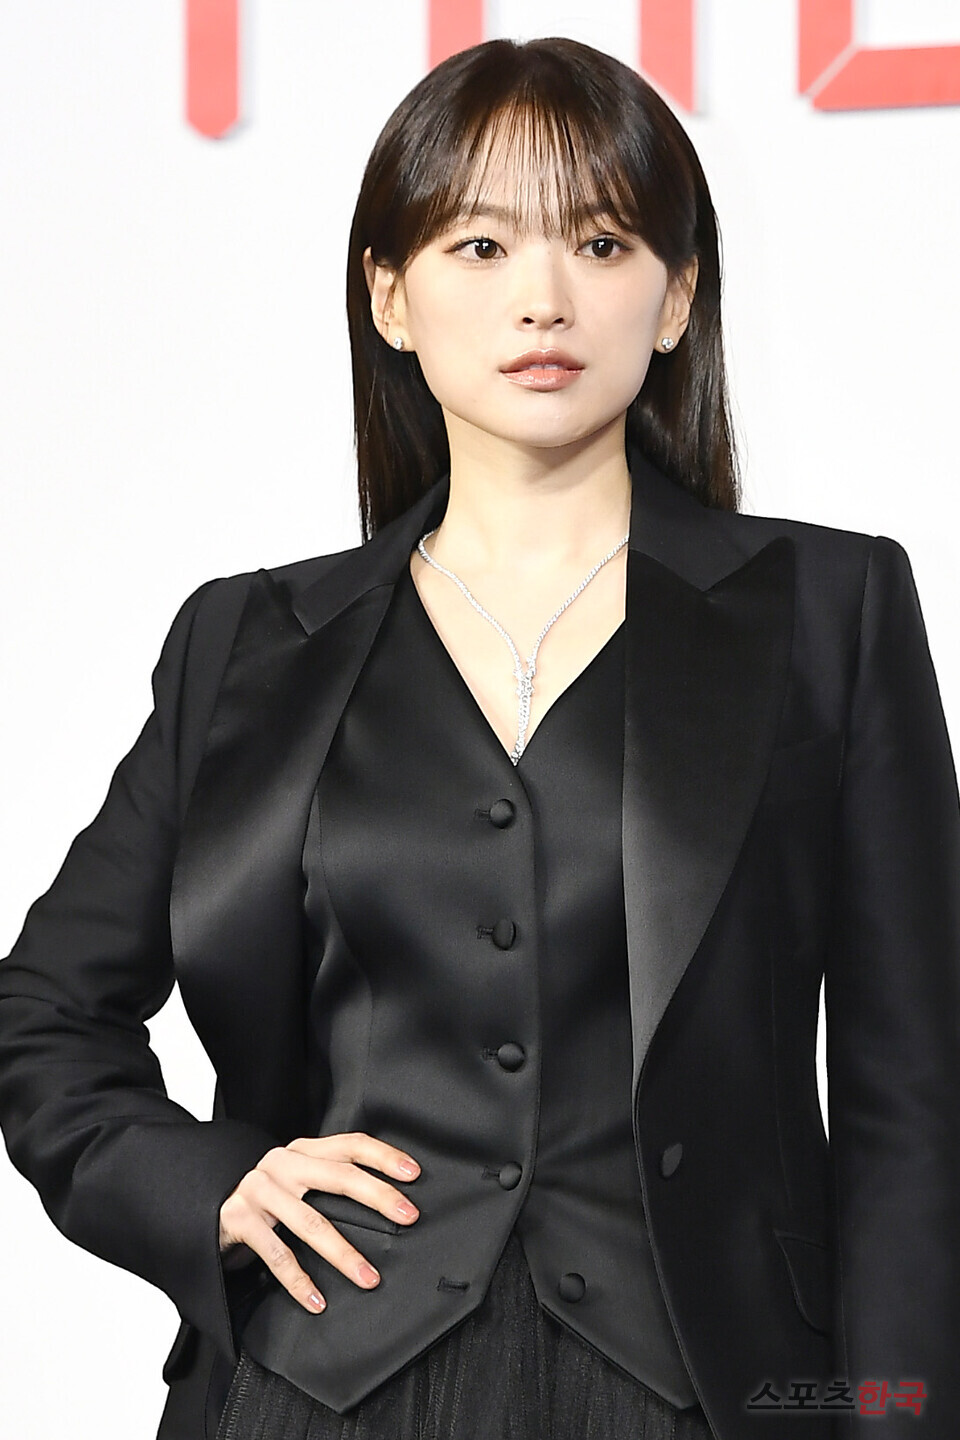 넷플릭스 시리즈 '더 에이트 쇼'(The 8 Show) 제작발표회에 참석한 배우 천우희. ⓒ이혜영 기자 lhy@hankooki.com